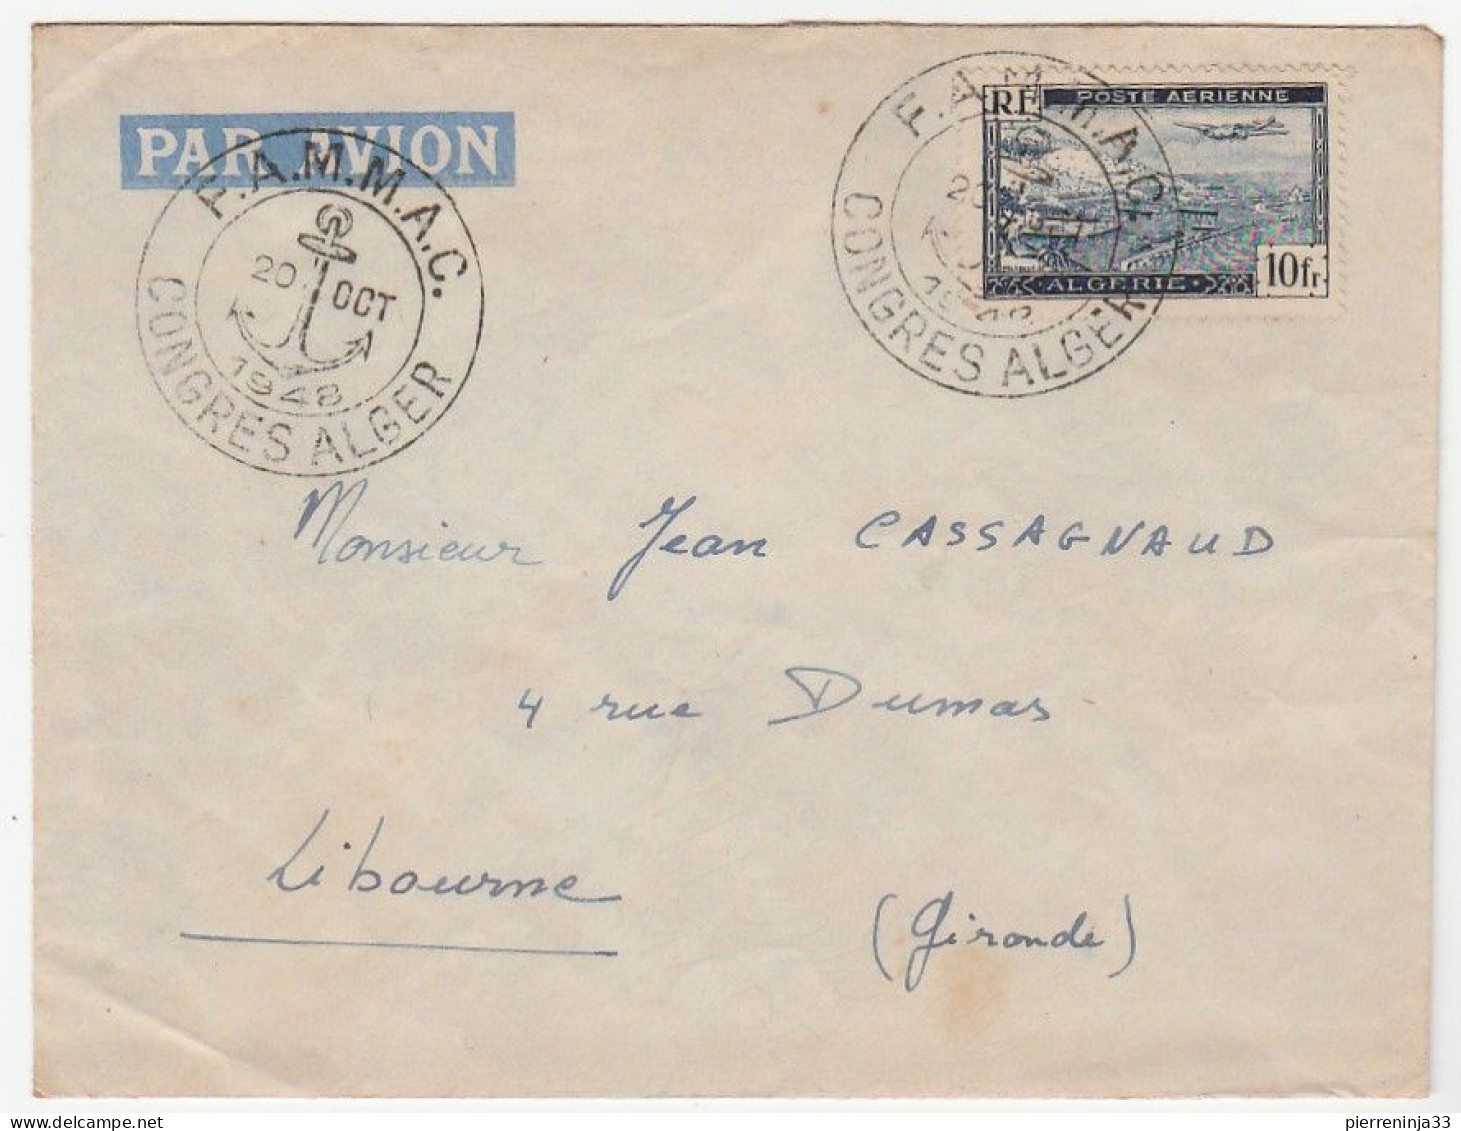 Lettre Avec Cachet Illustré De La Marine  "FAMMAC/ Congrès Alger, 1948" - Briefe U. Dokumente